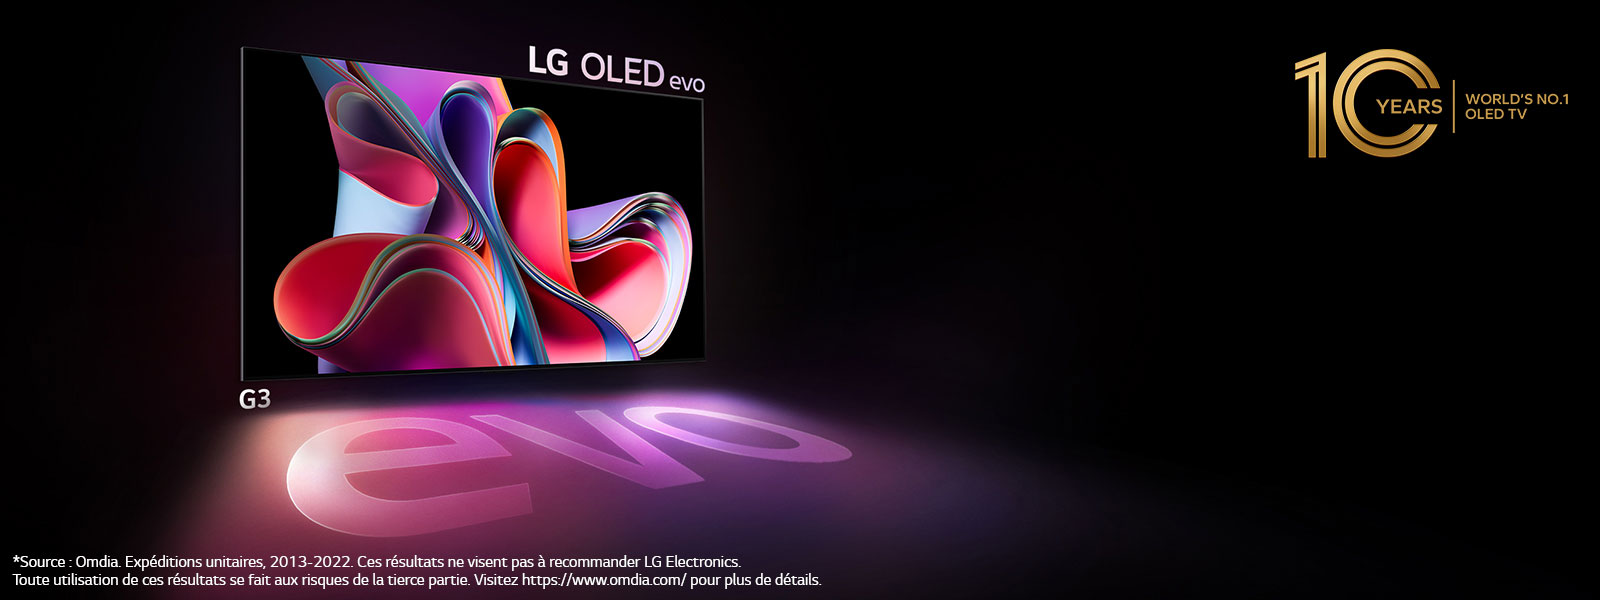 LG OLED G3 TV сияет в темном пространстве. В правом правом логотип напоминает 10 -летие OLED